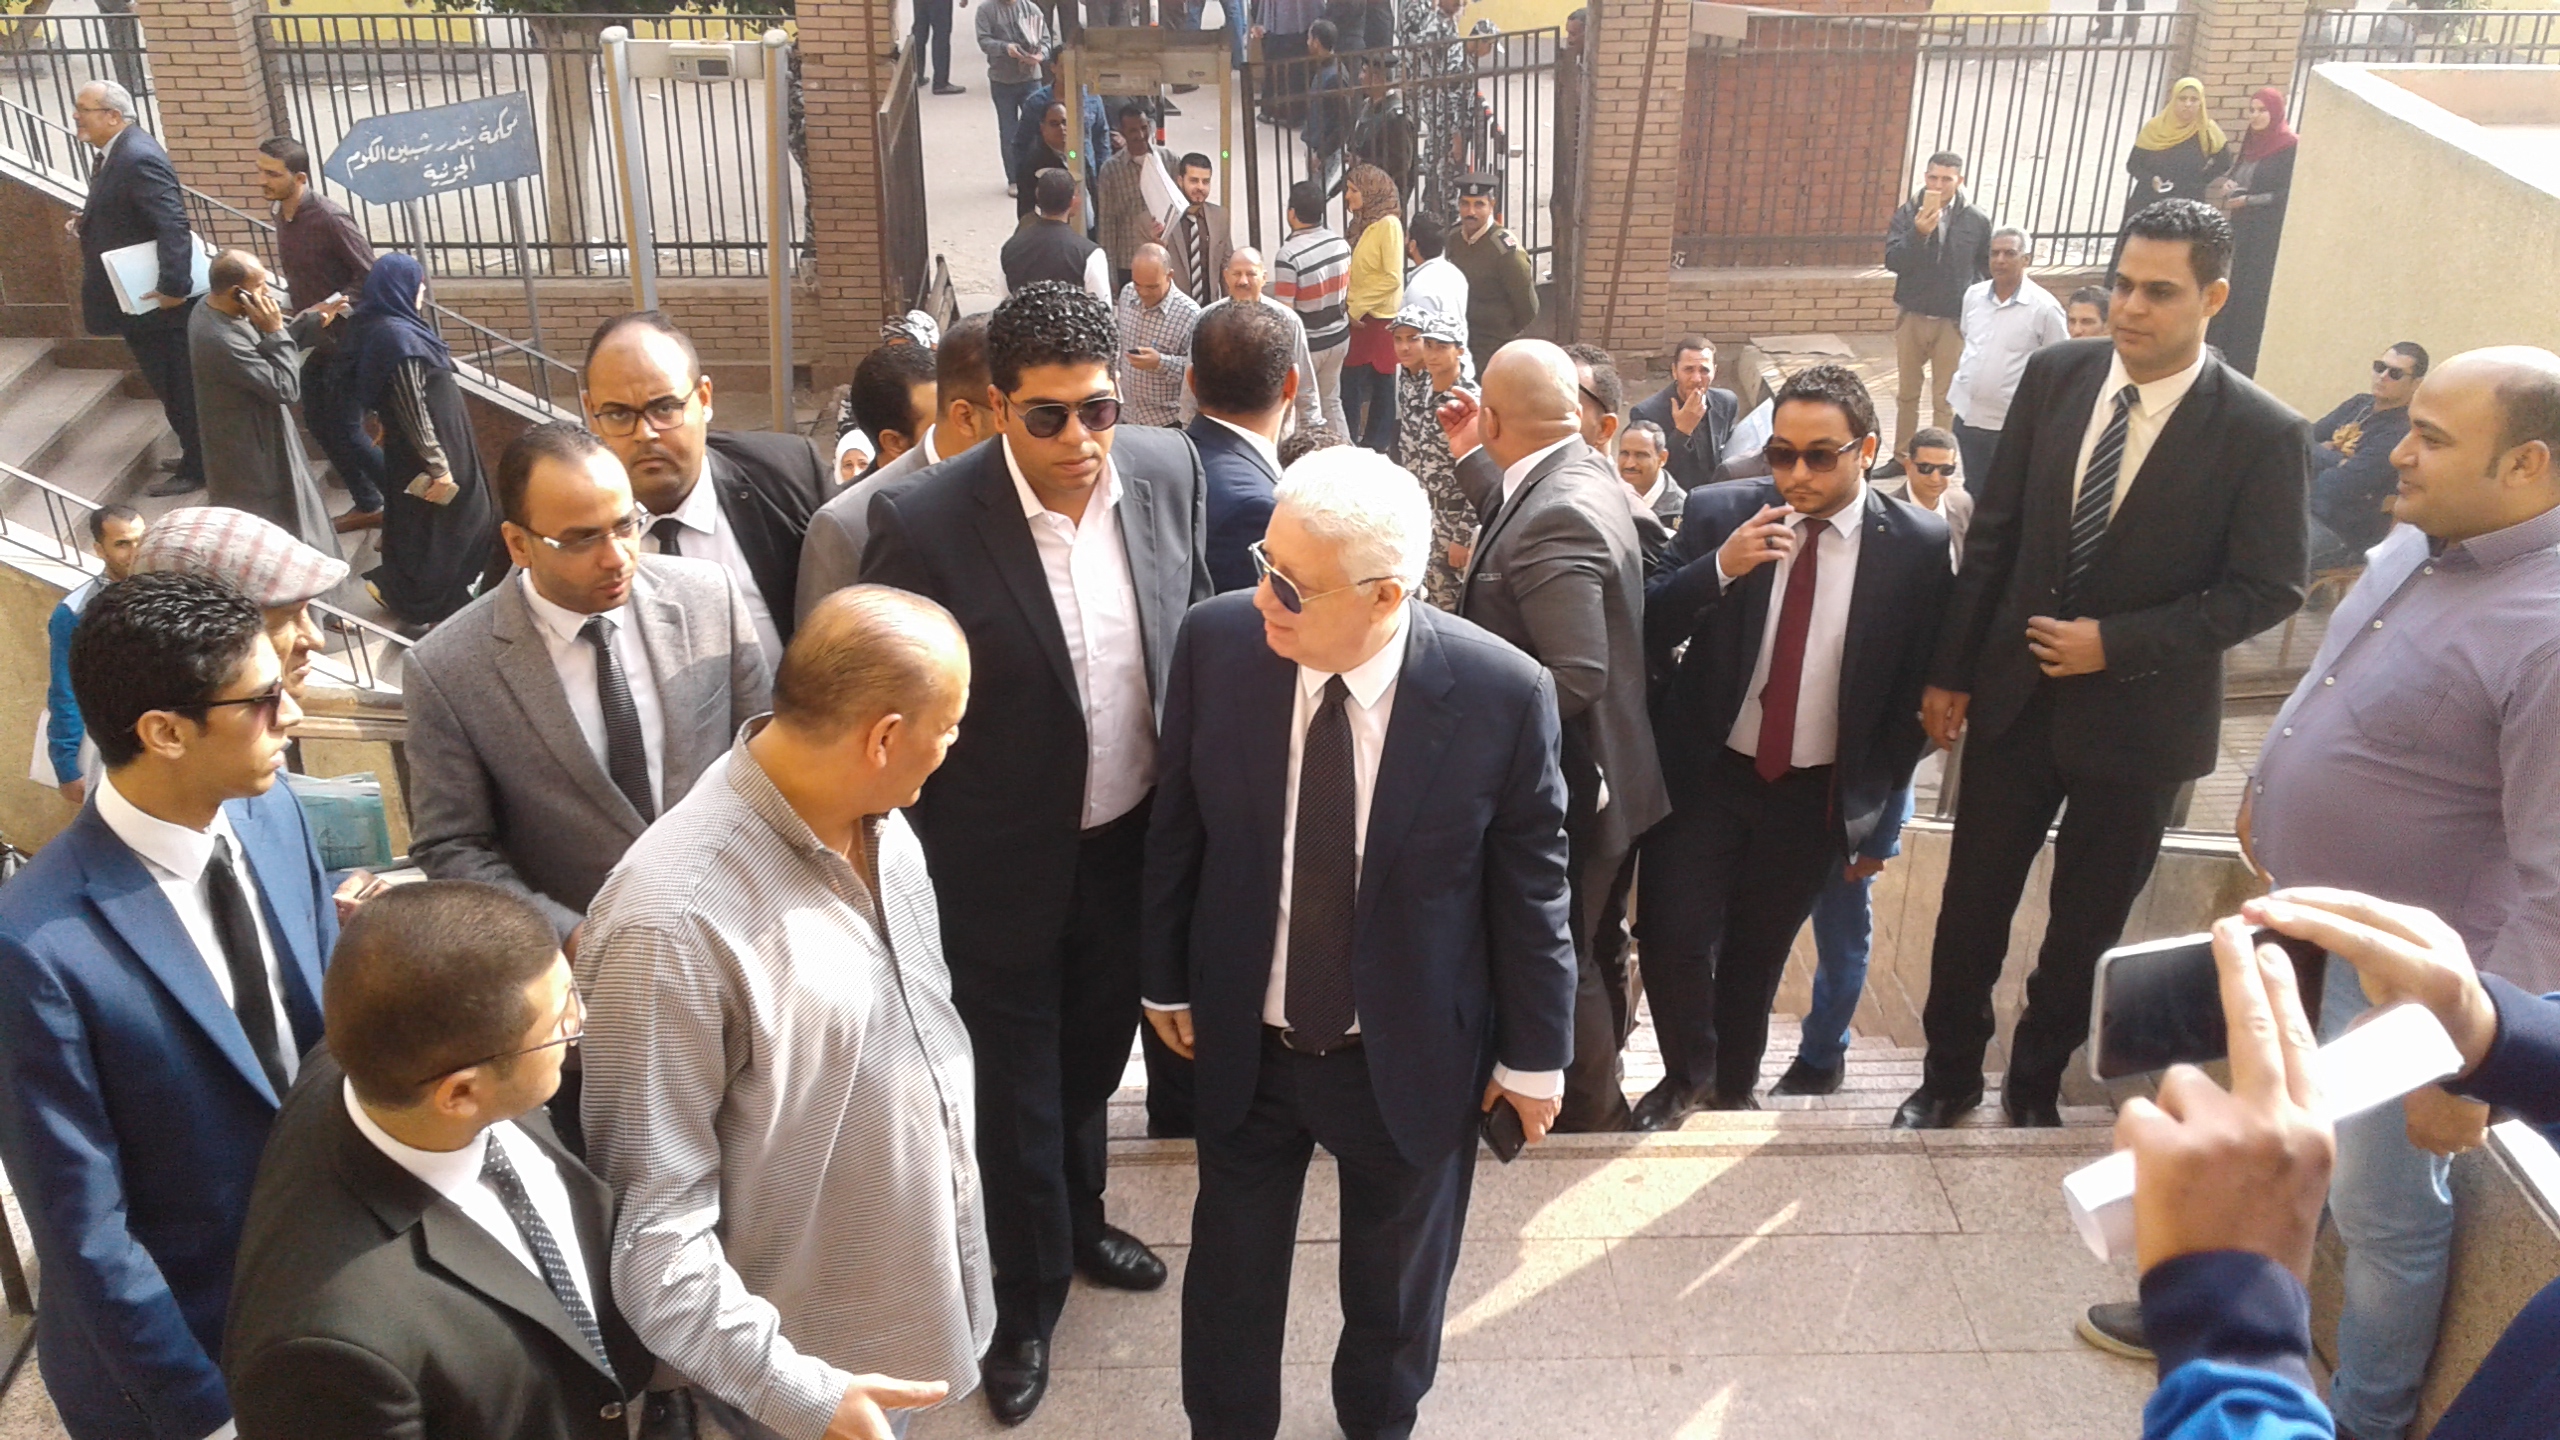 وصول مرتضى منصور لمحكمة شبين الكوم (2)